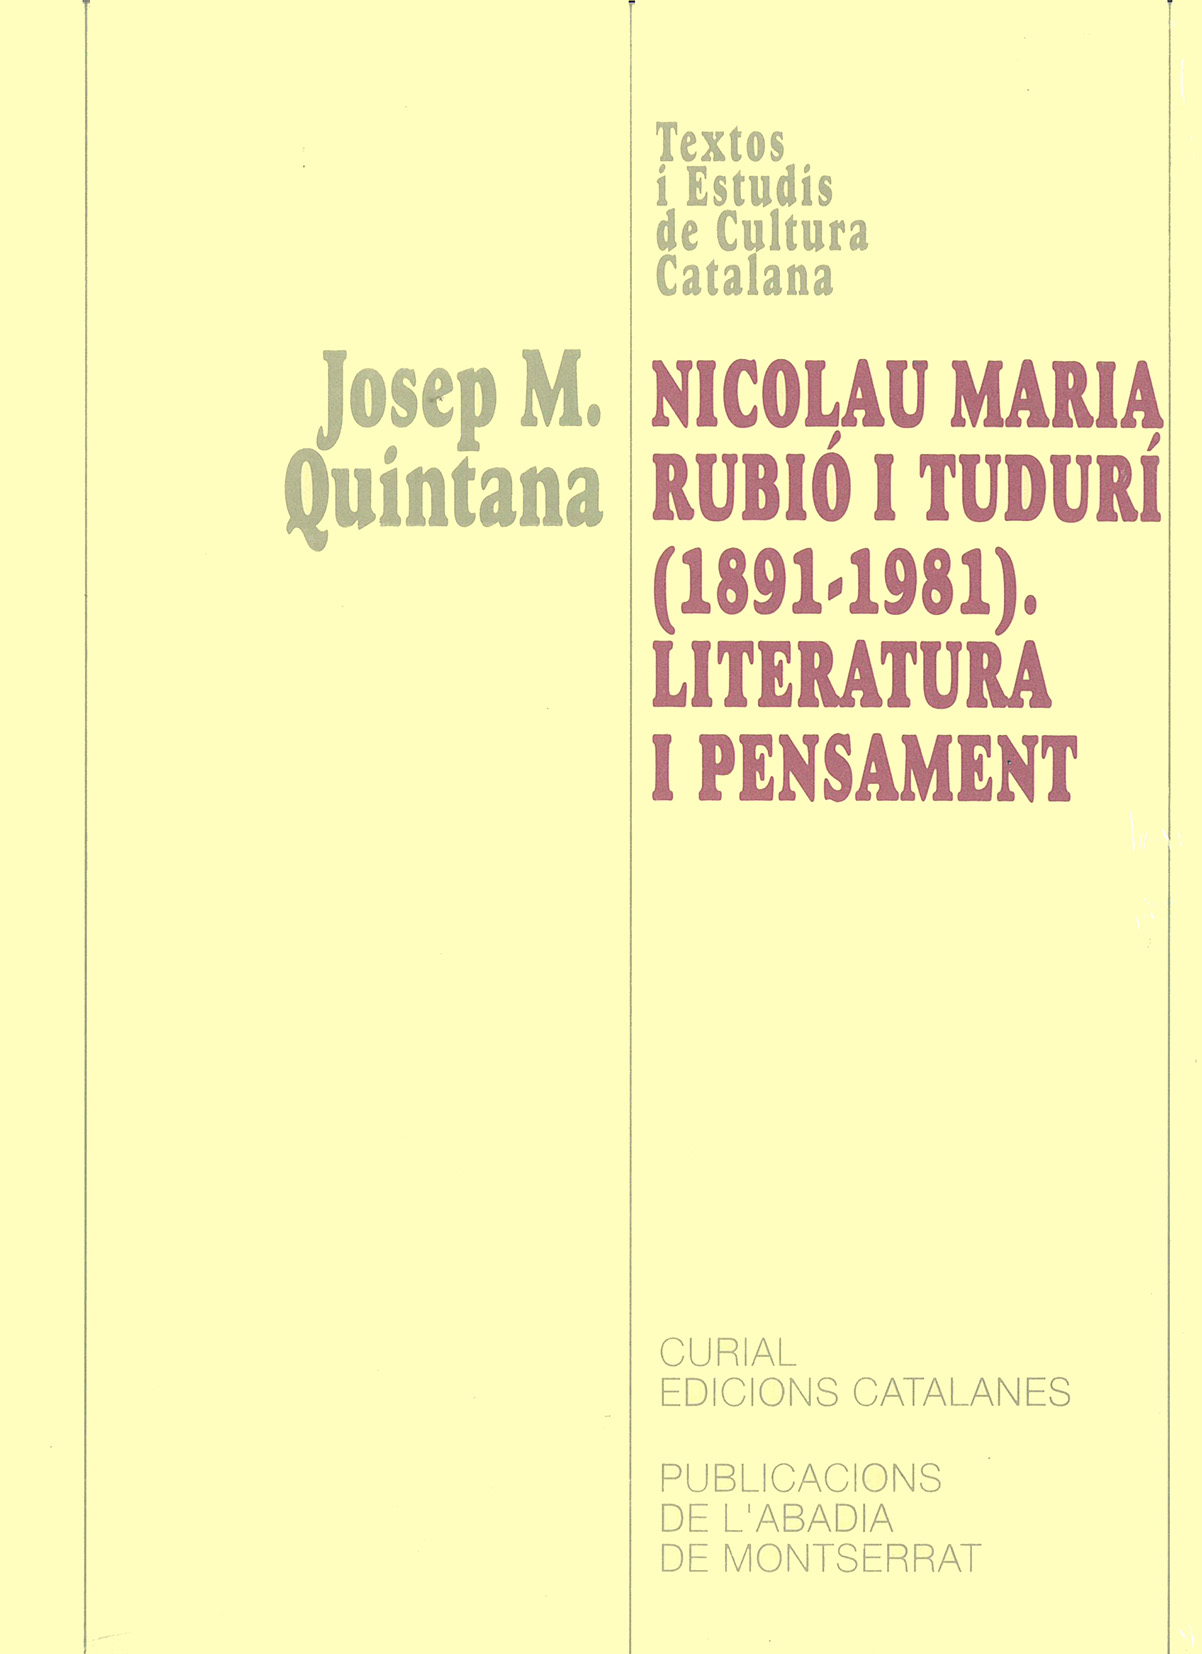 Josep Maria Quintana Trias